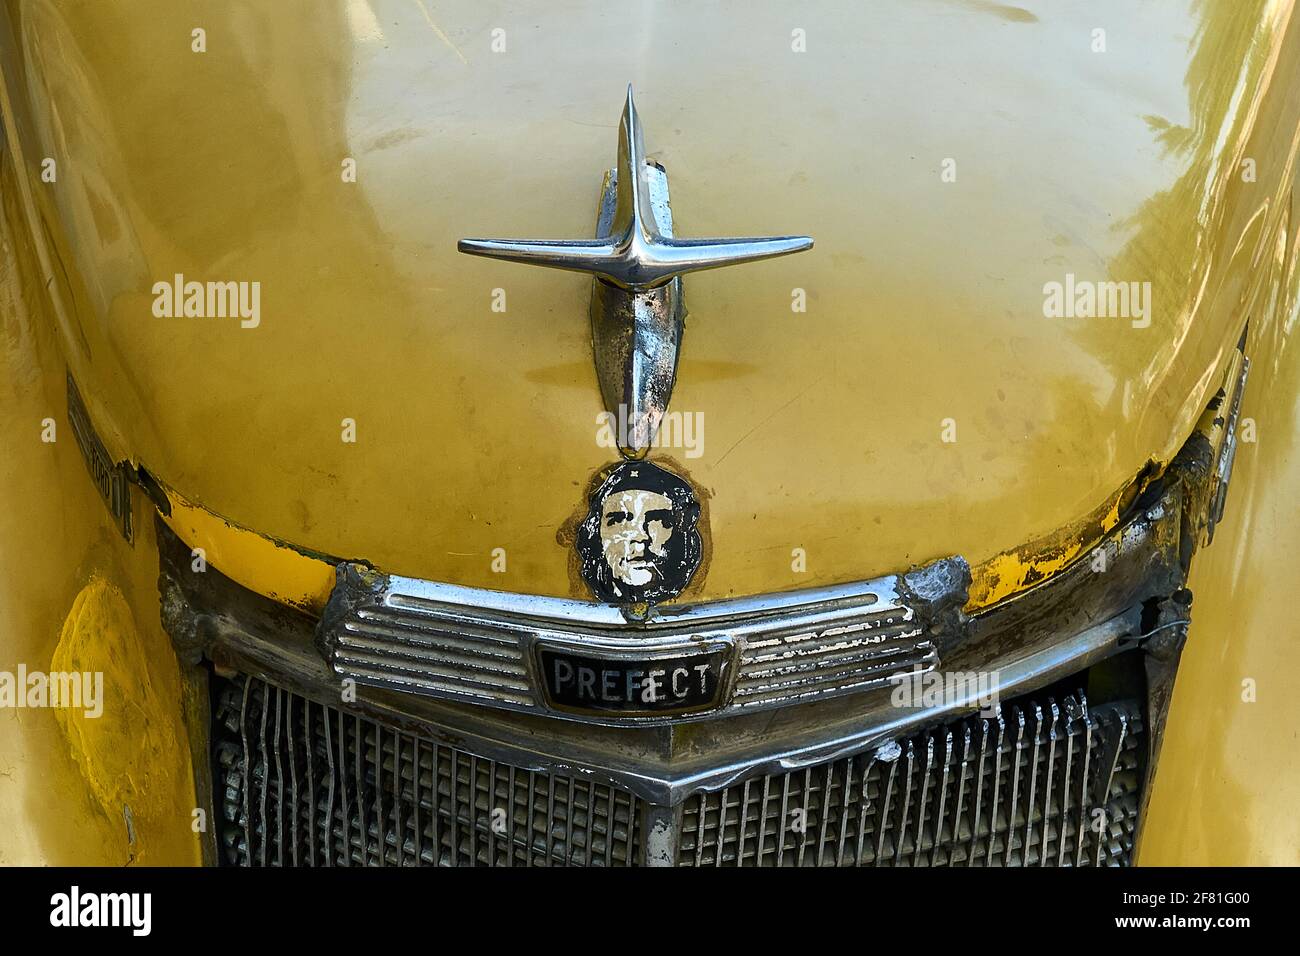 Un autocollant de voiture Che Guevara placé sous l'ornement de capot argent d'un ancien Préfet jaune rouillé de Ford à Trinidad, Cuba Banque D'Images